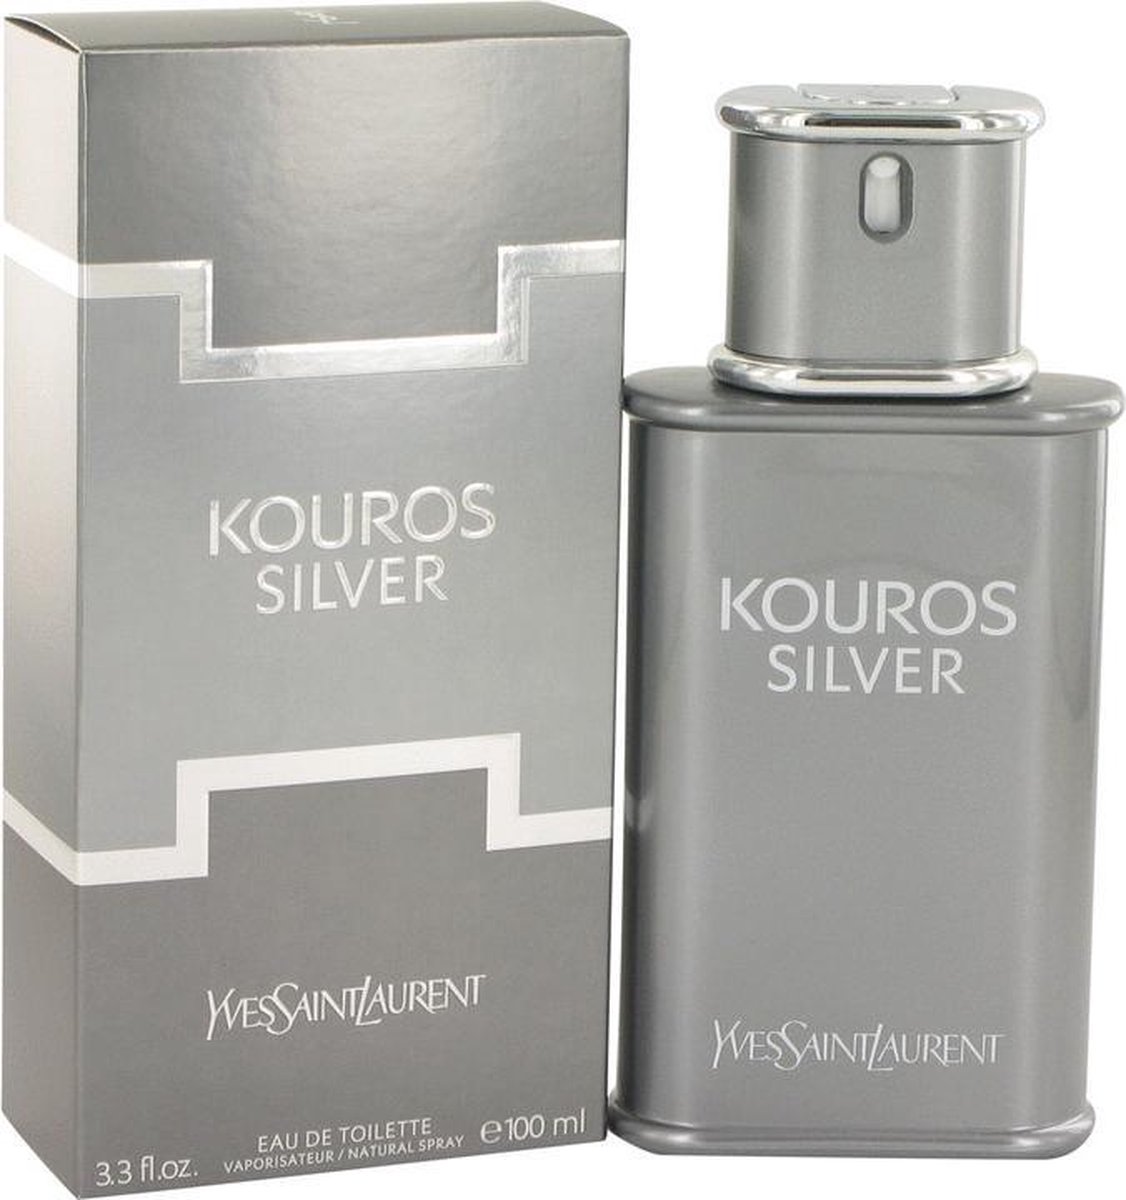 Yves Saint Laurent Eau De Toilette Kouros Silver 100 ml - Pour Homme |  bol.com